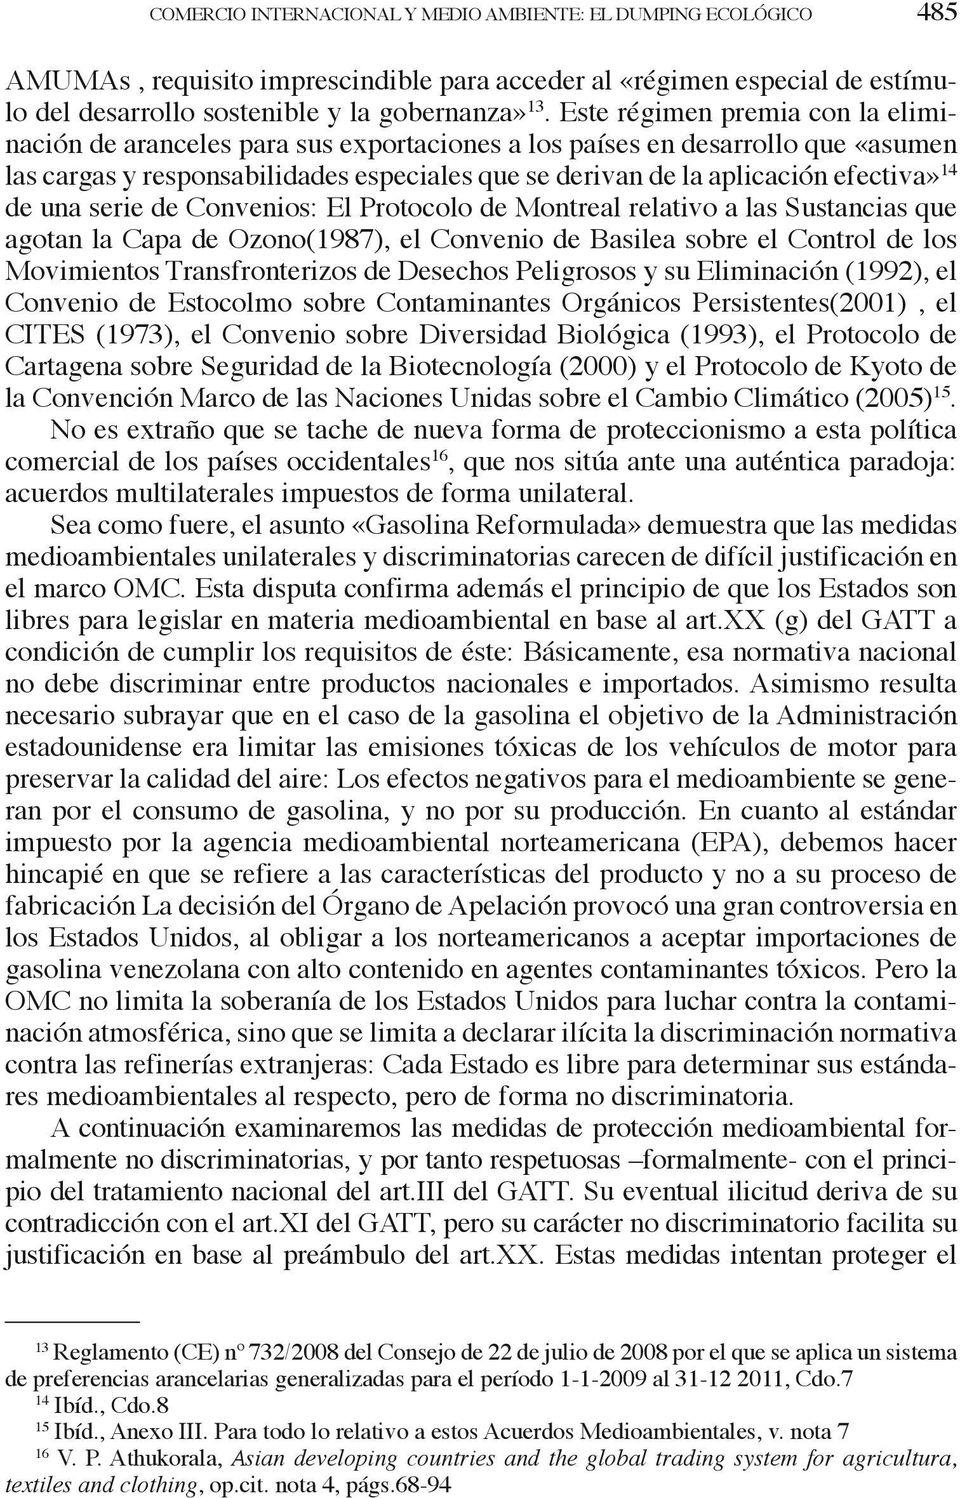 14 de una serie de Convenios: El Protocolo de Montreal relativo a las Sustancias que agotan la Capa de Ozono(1987), el Convenio de Basilea sobre el Control de los Movimientos Transfronterizos de